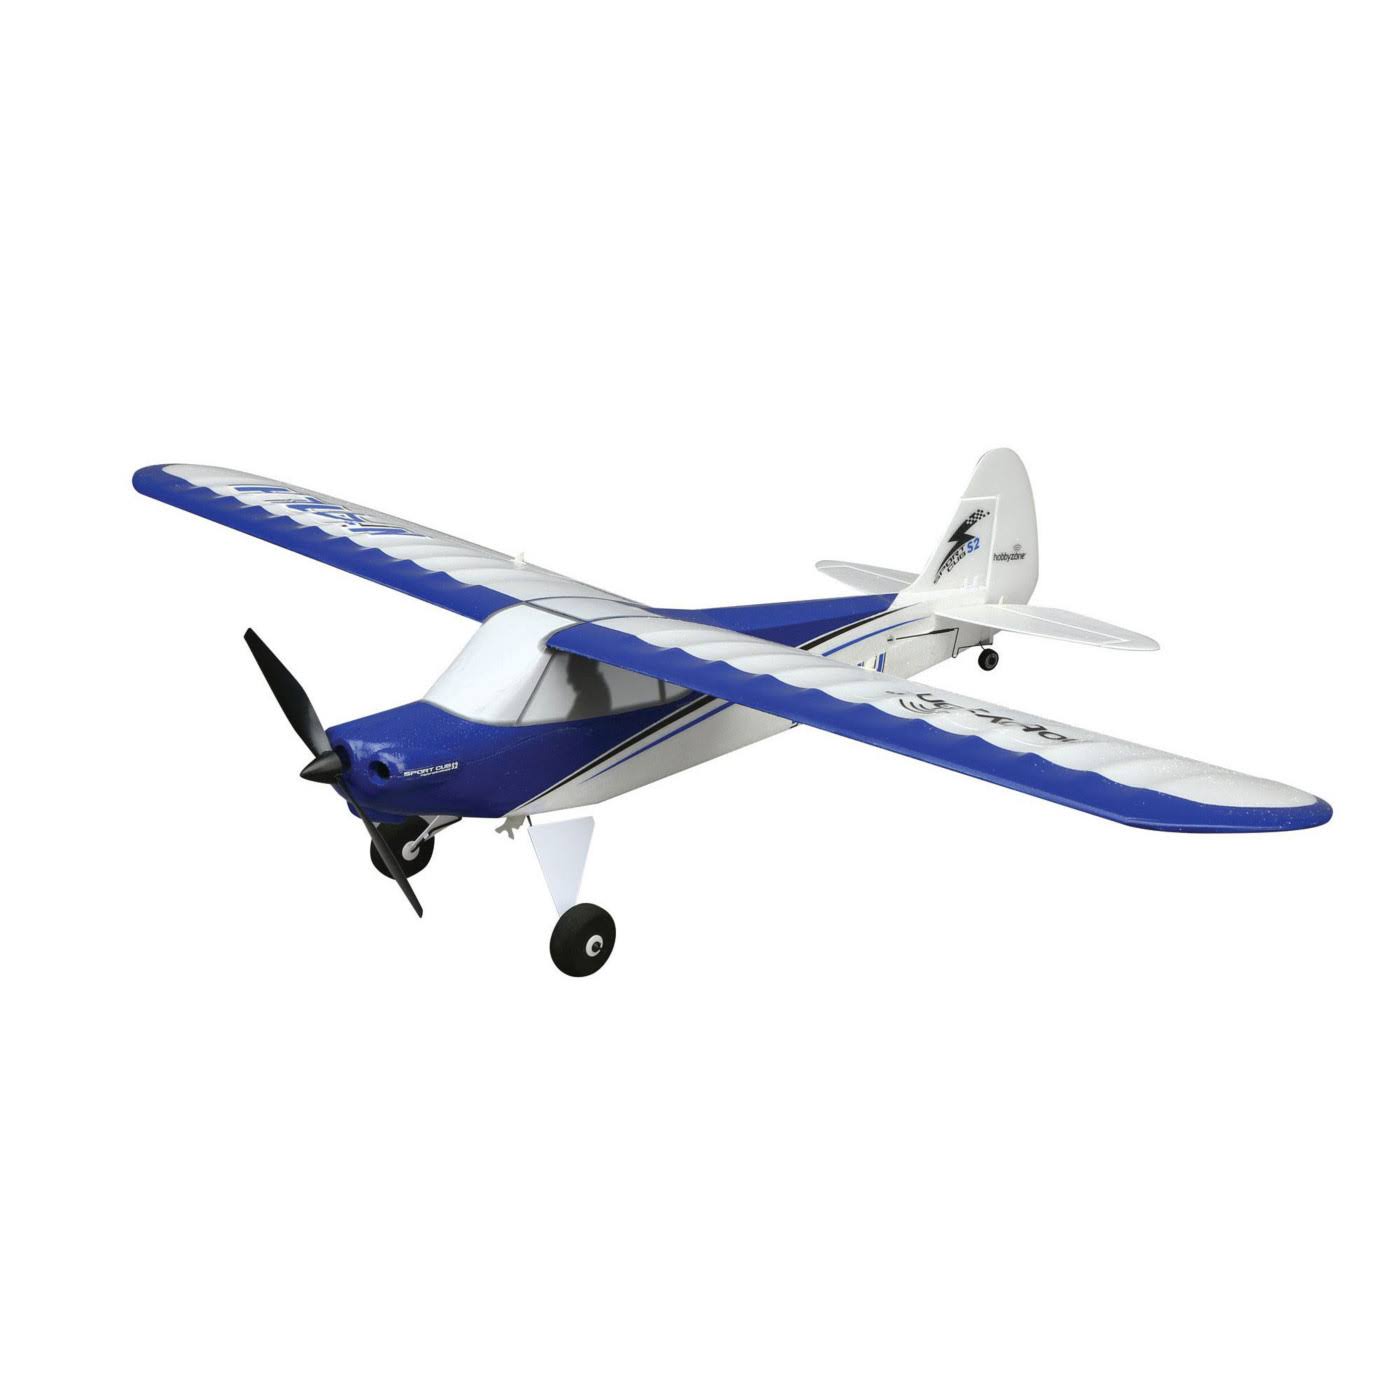 Hobbyzone Sport Cub S v2 Starter Rc-Trainer Flight Model Bnf Basic Safe HBZ4450